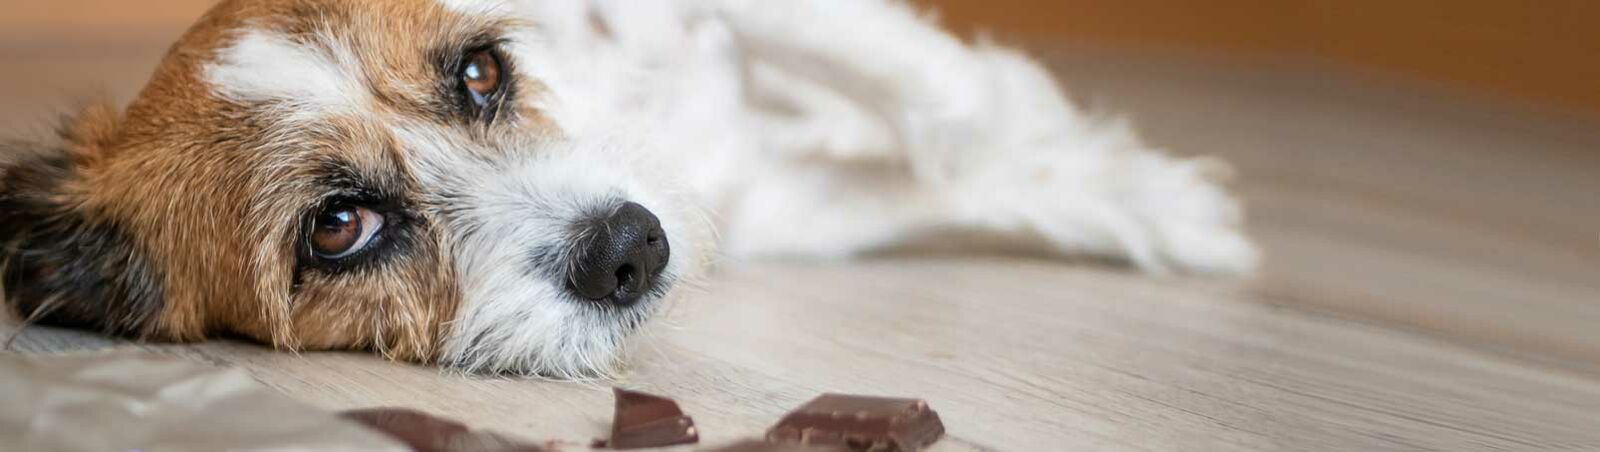 Ein kleiner Hund liegt seitlich auf dem Boden – vor ihm liegt Schokolade.